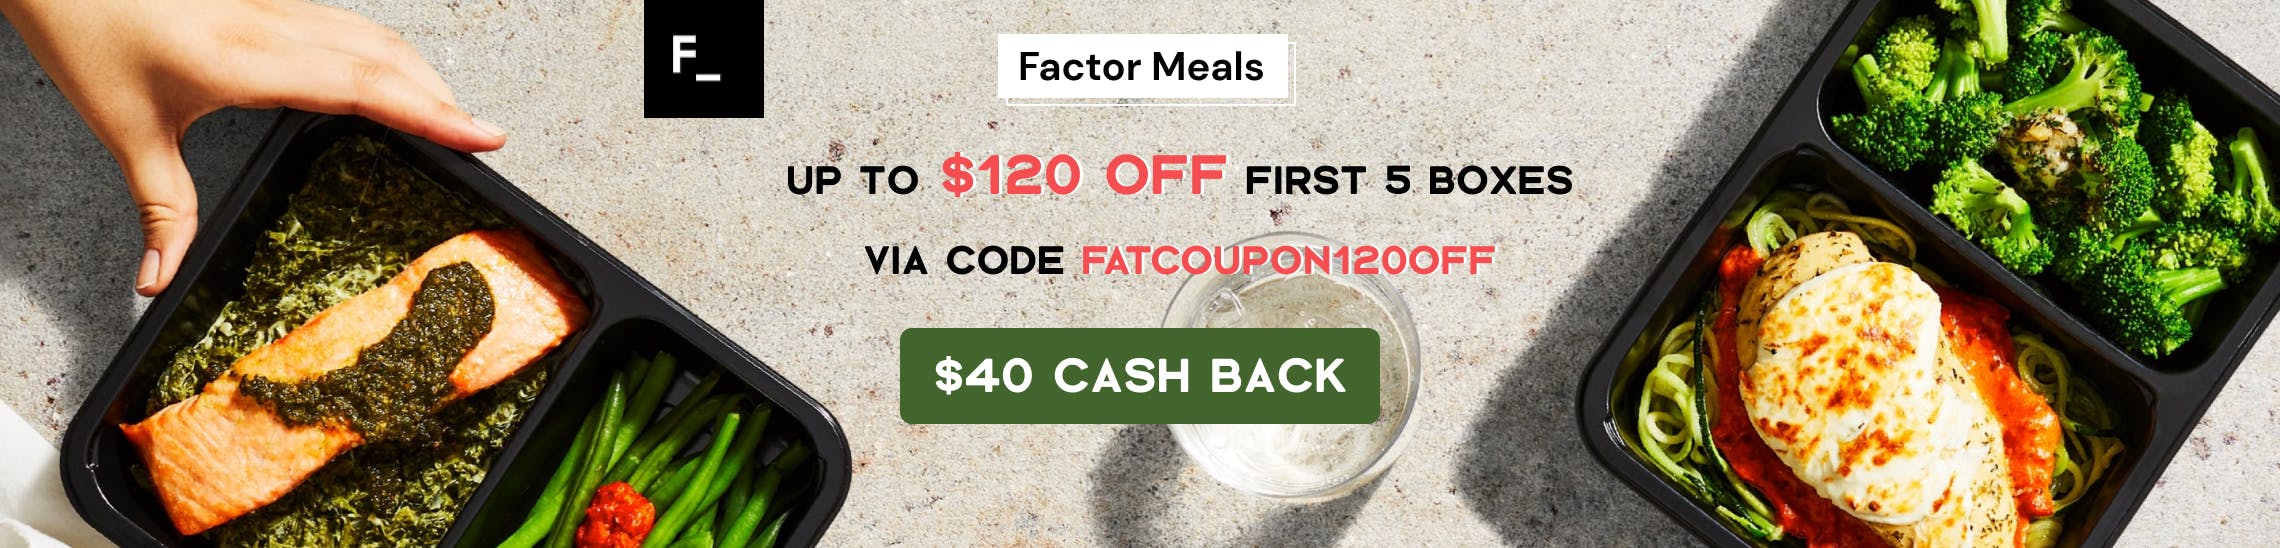 Factor Meals Promo Codes & Cash Back